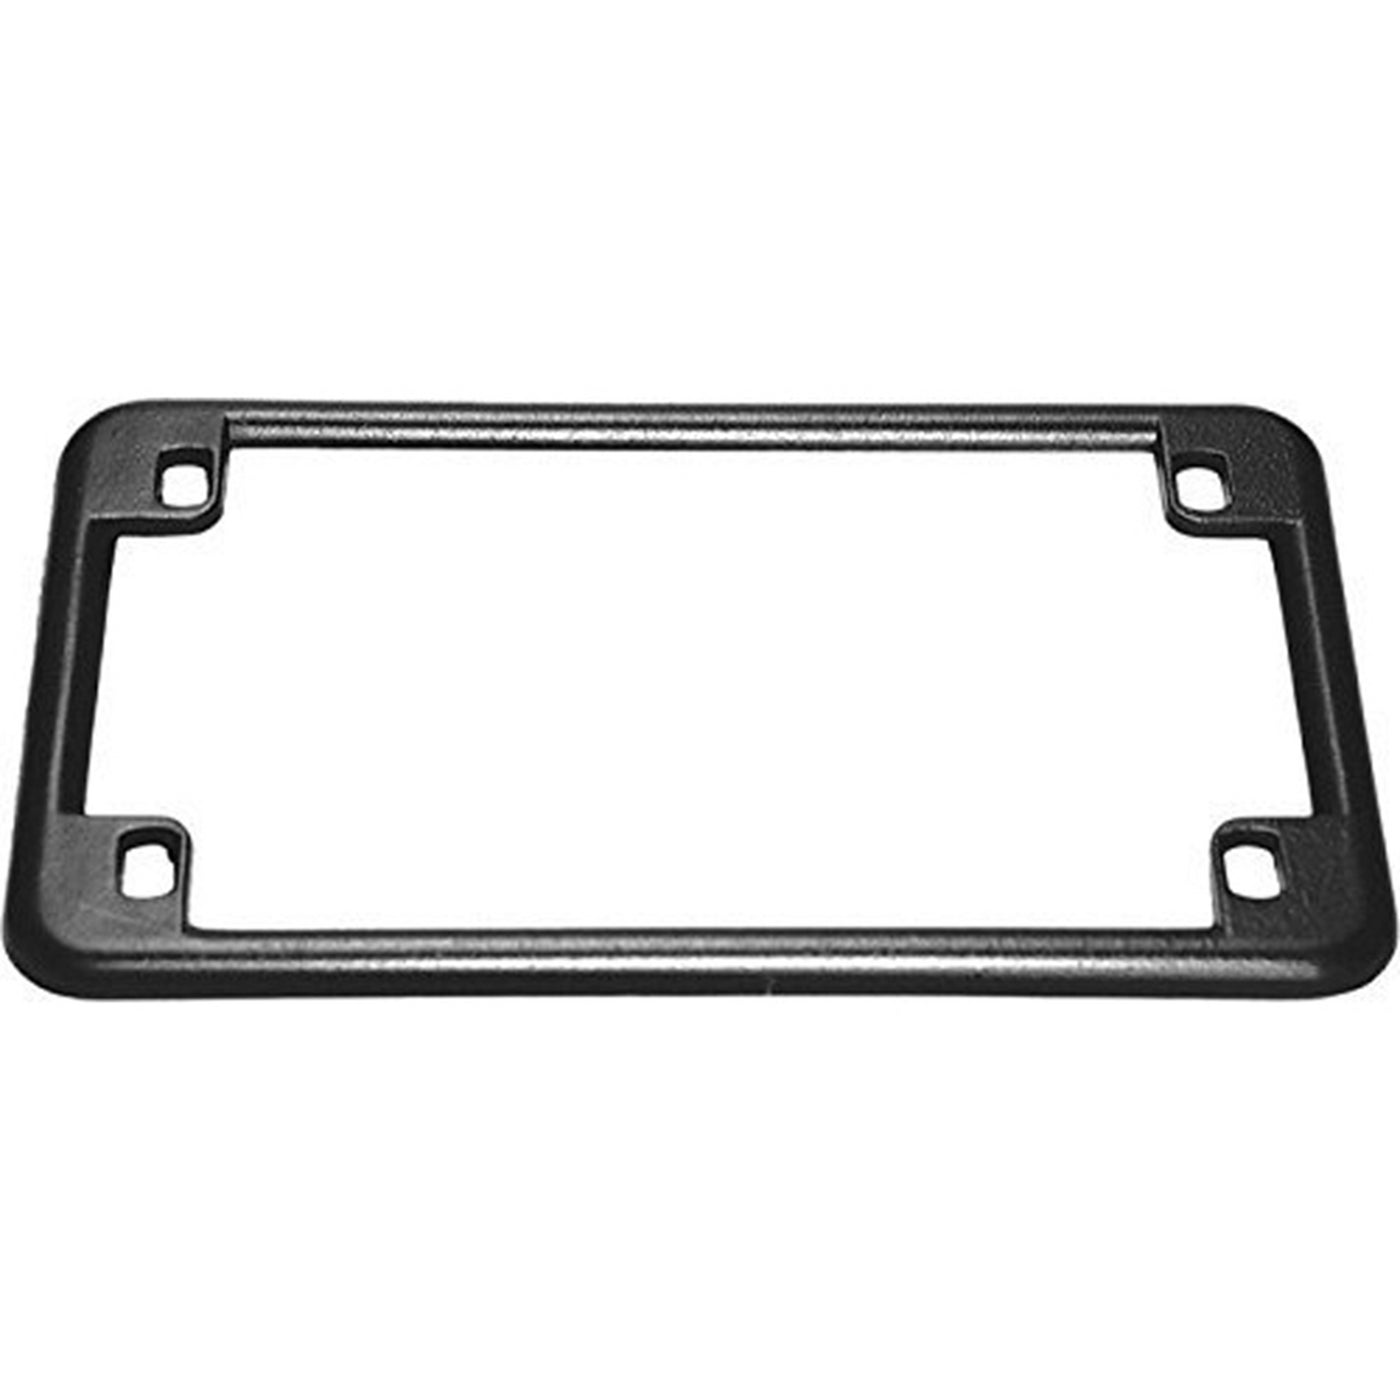 Emgo 86-42610 License Plate Frame - Black #86-42610